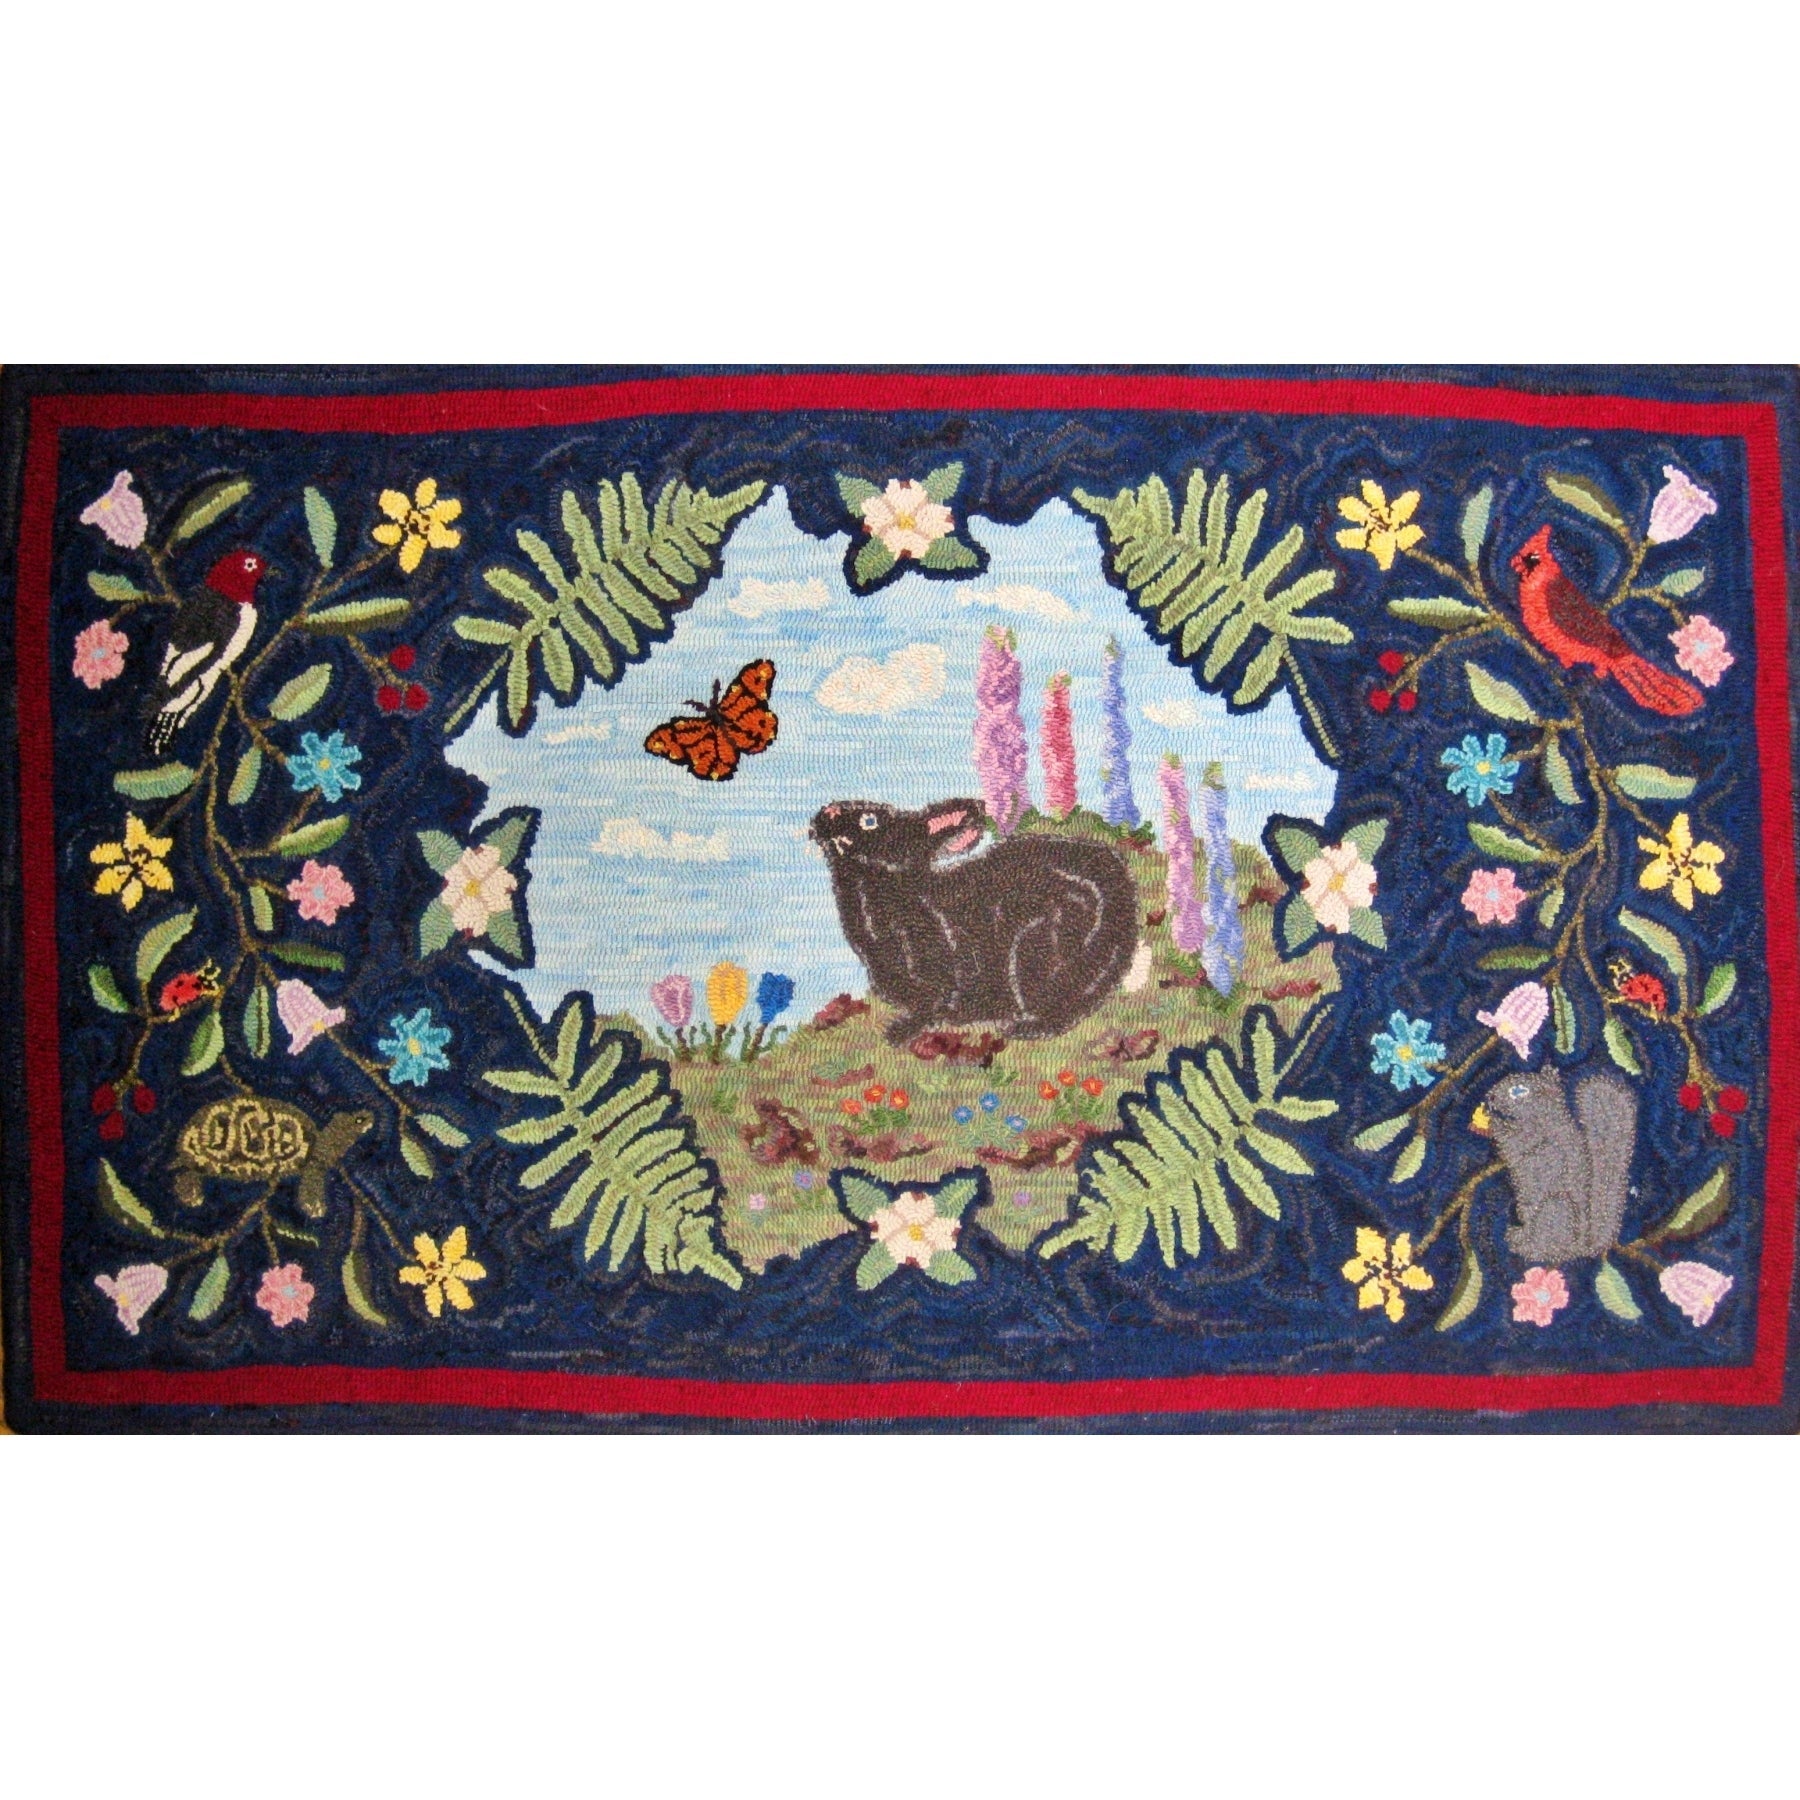 Nosy Rabbit, rug hooked by John Leonard